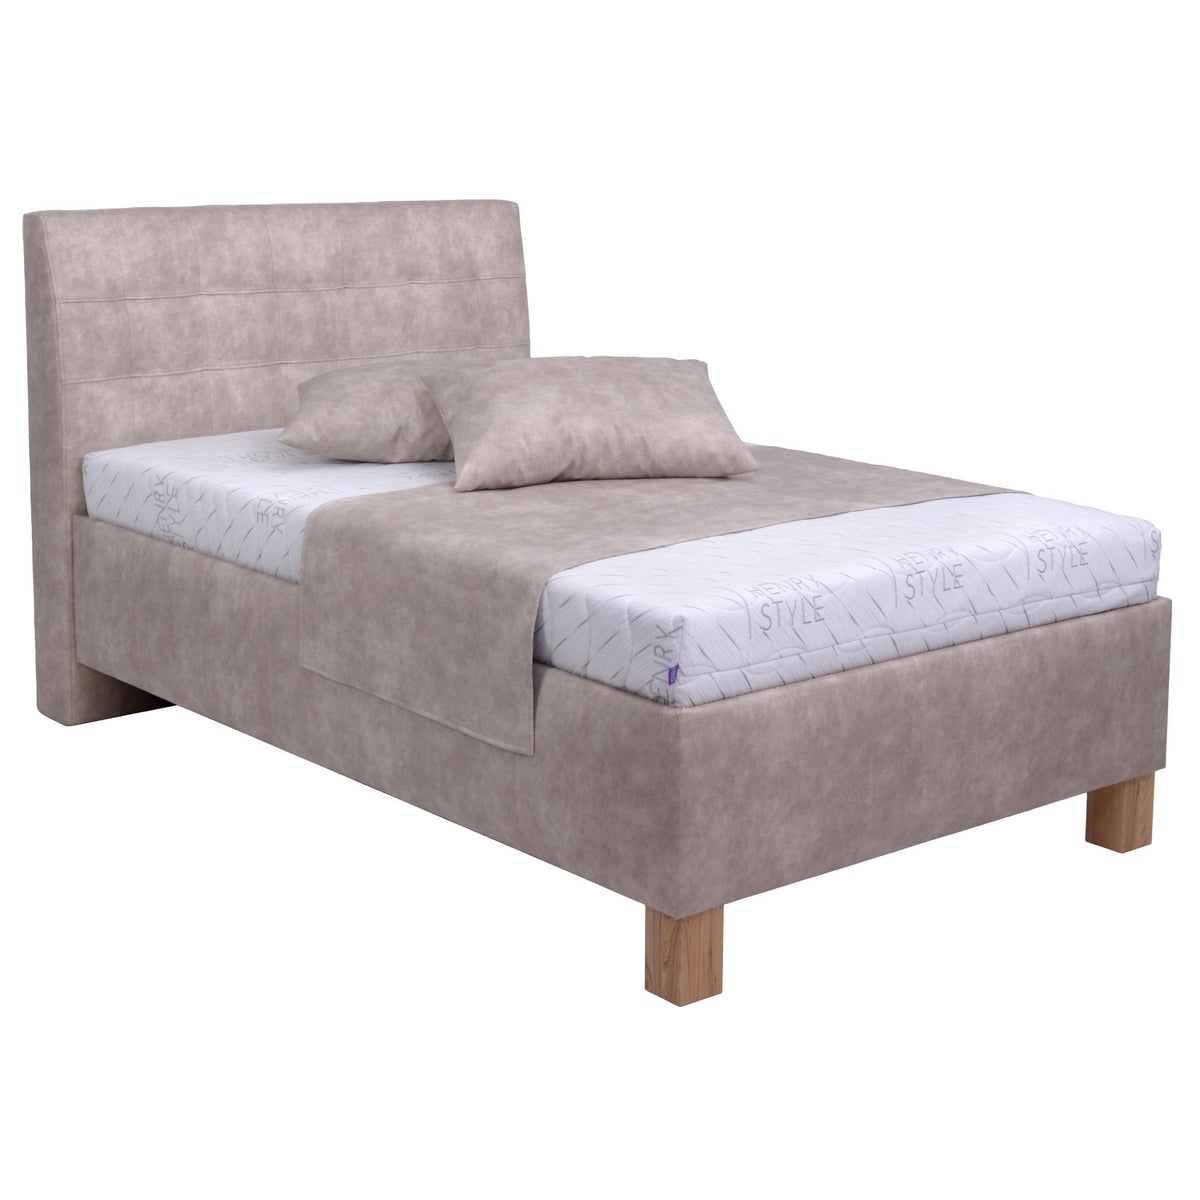 Čalouněná postel Victoria 140x200, béžová, bez matrace